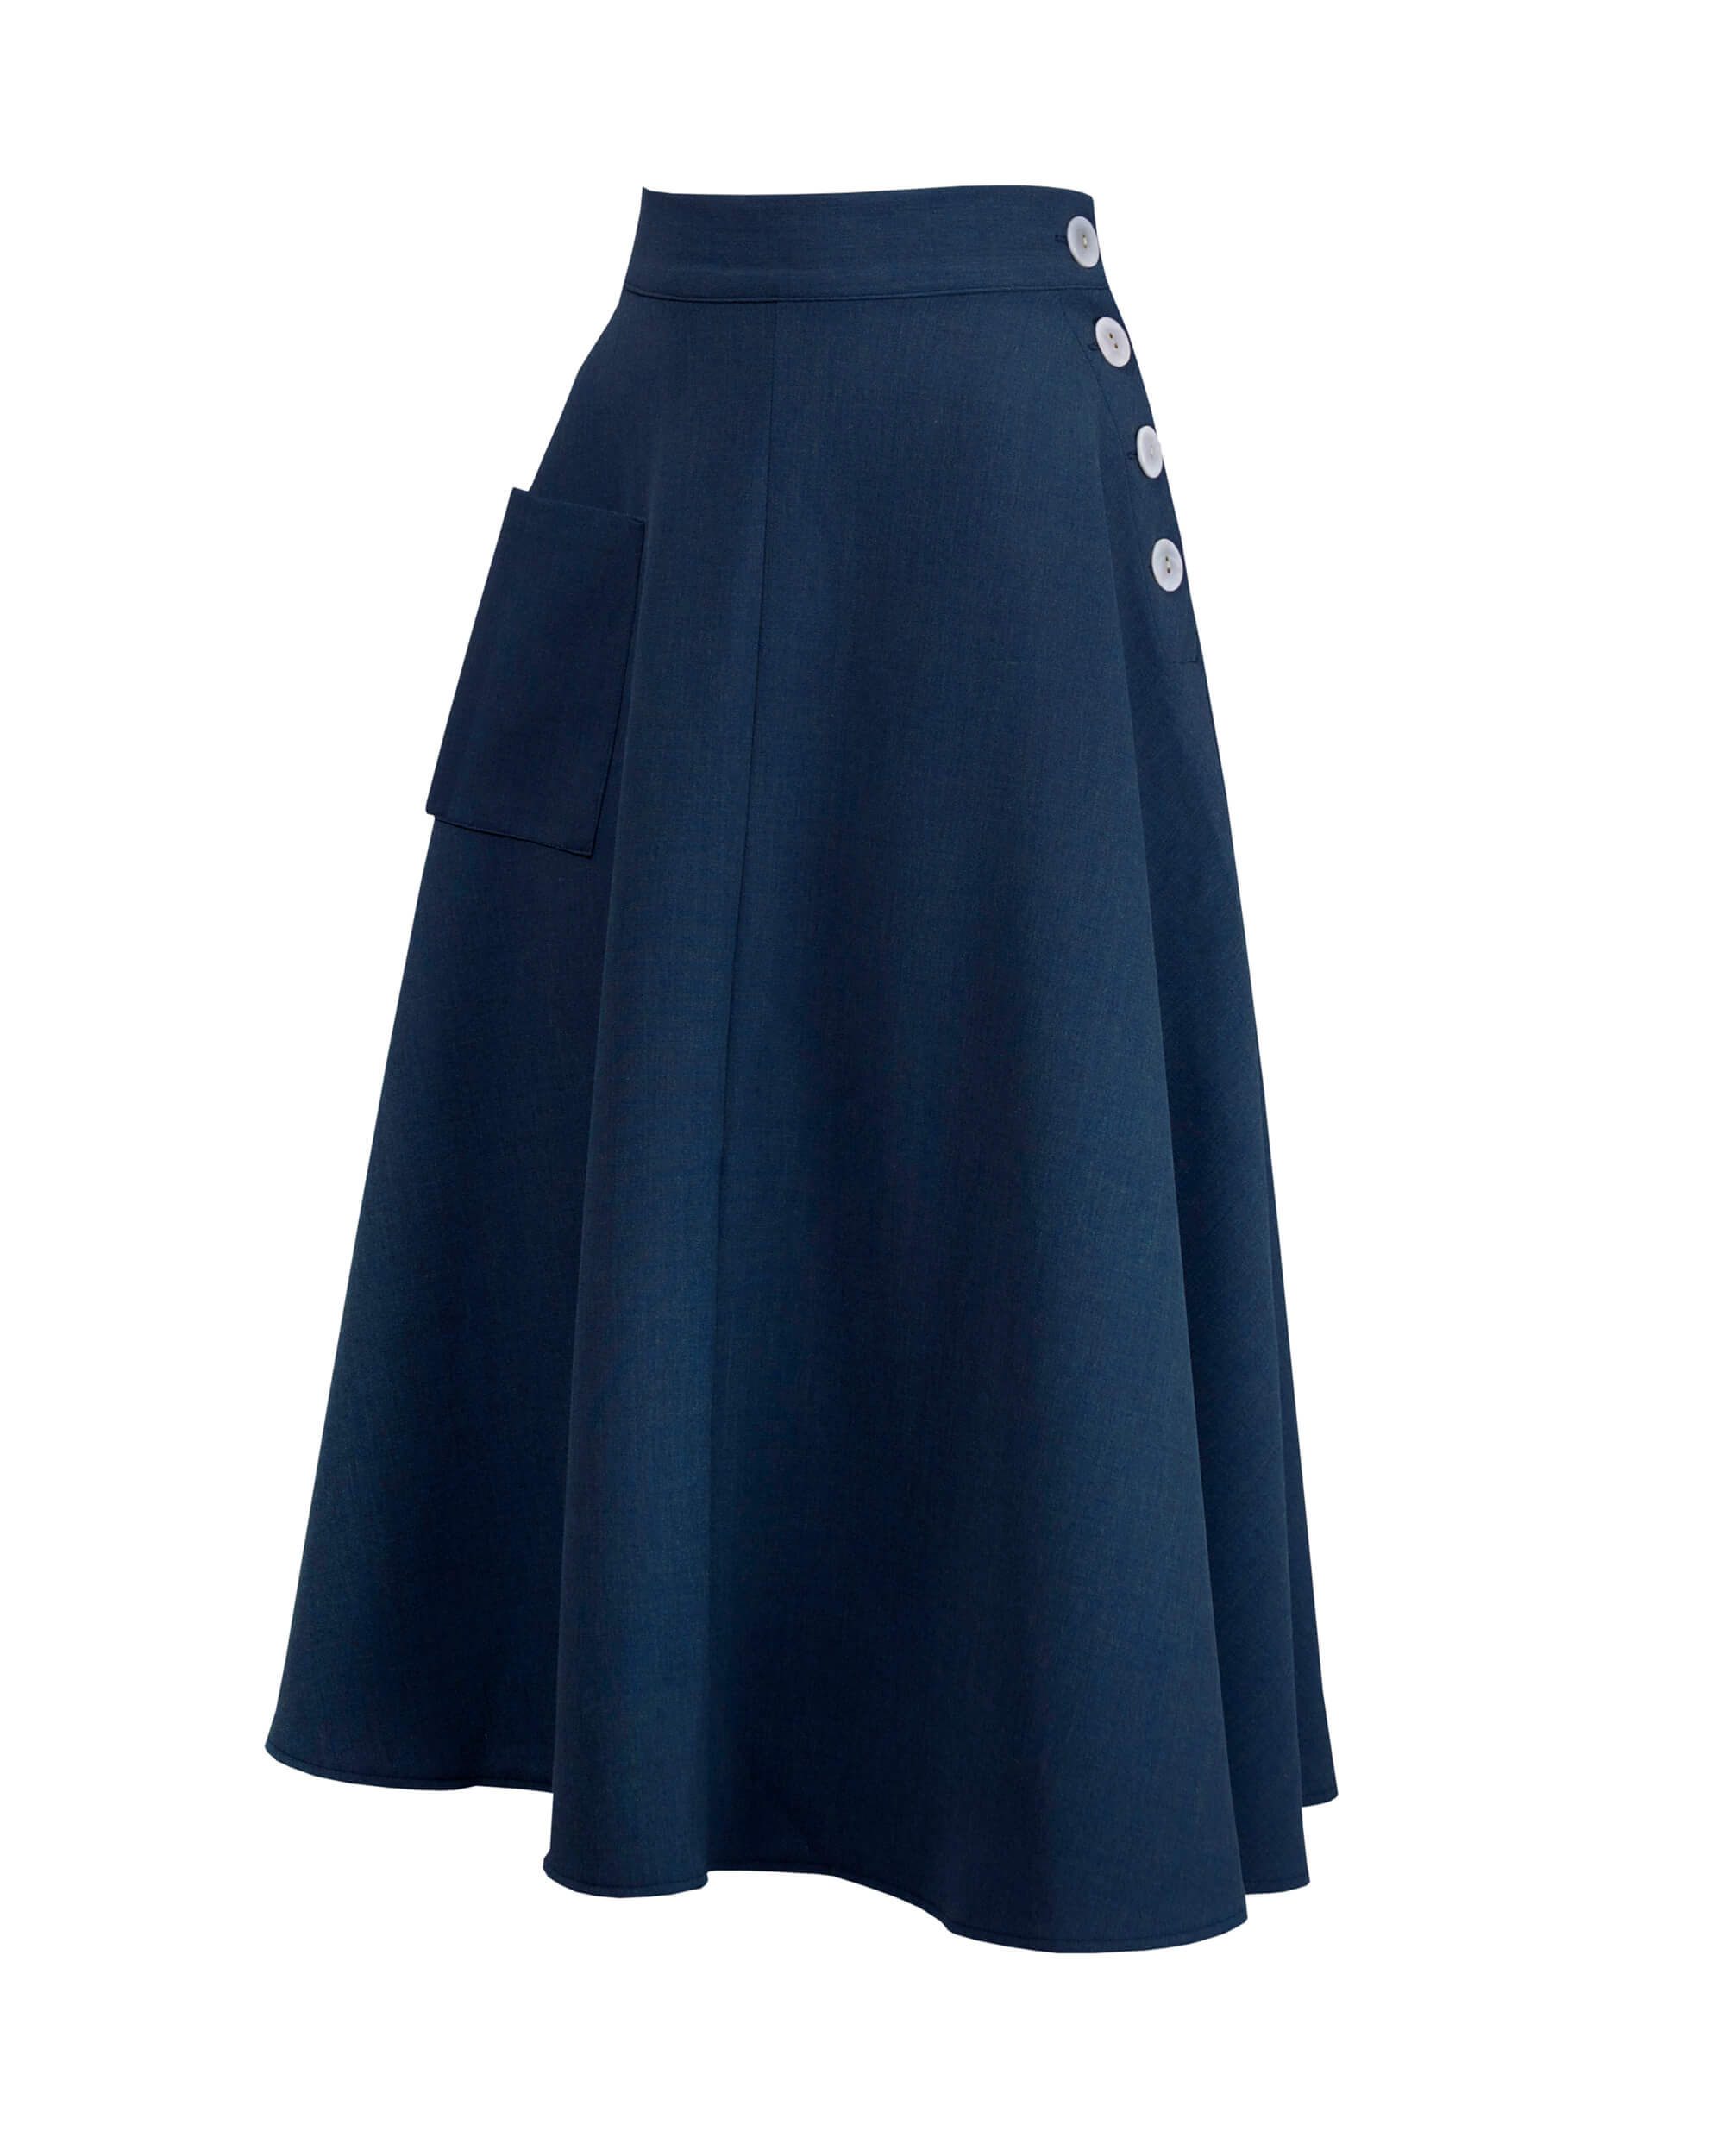 40s Whirlaway Skirt - Navy